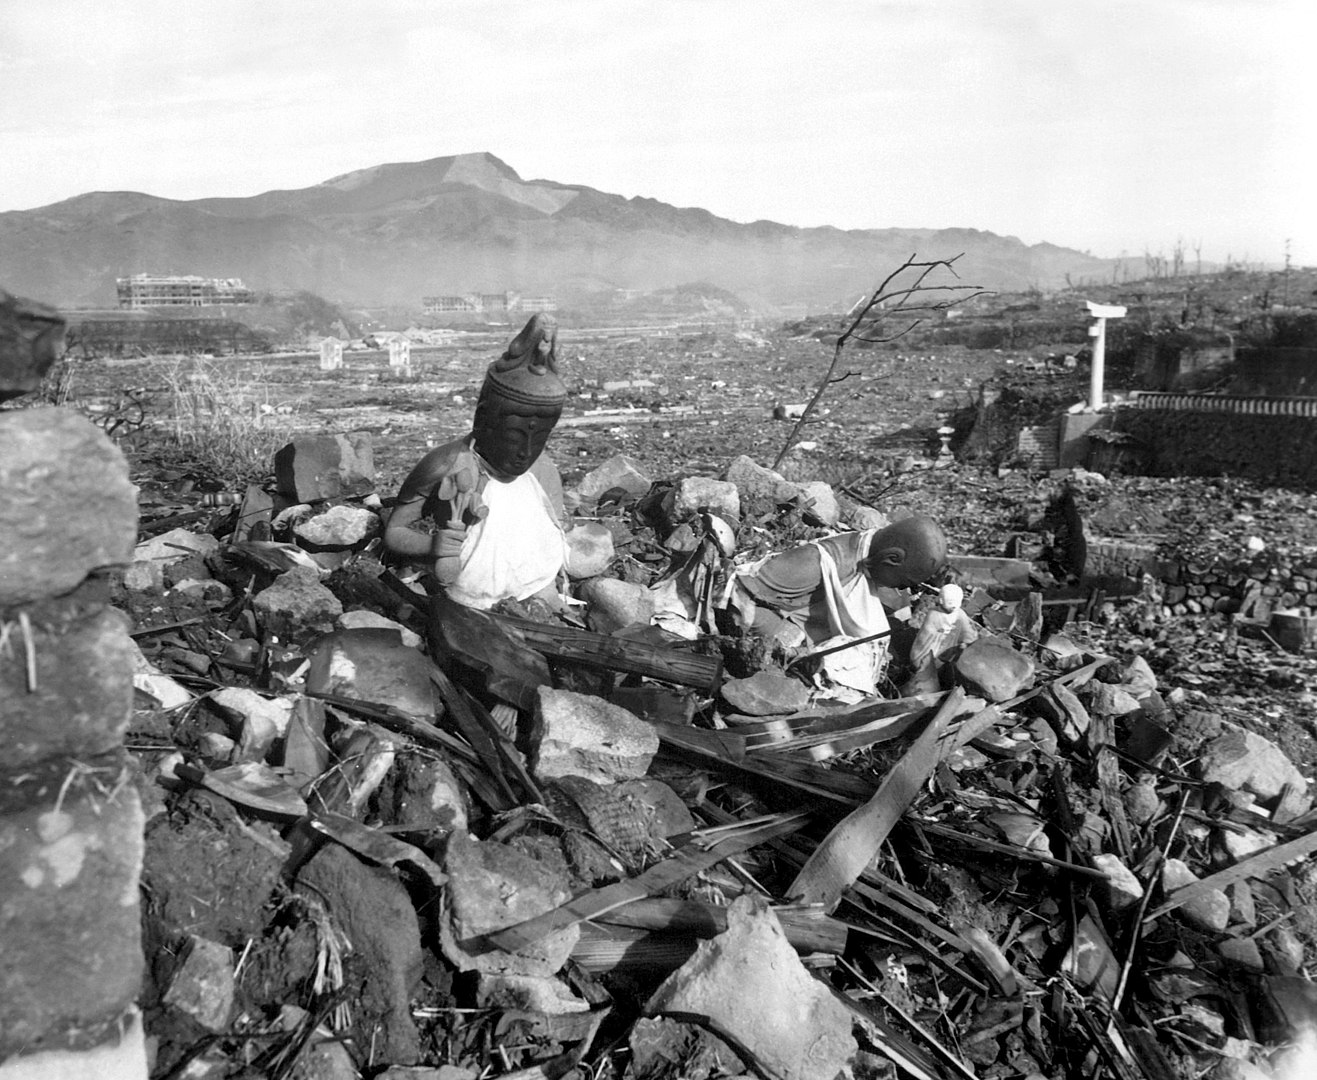 Senki sem kárpótolta a kísérleti alanyként használt japán atombomba-károsultakat